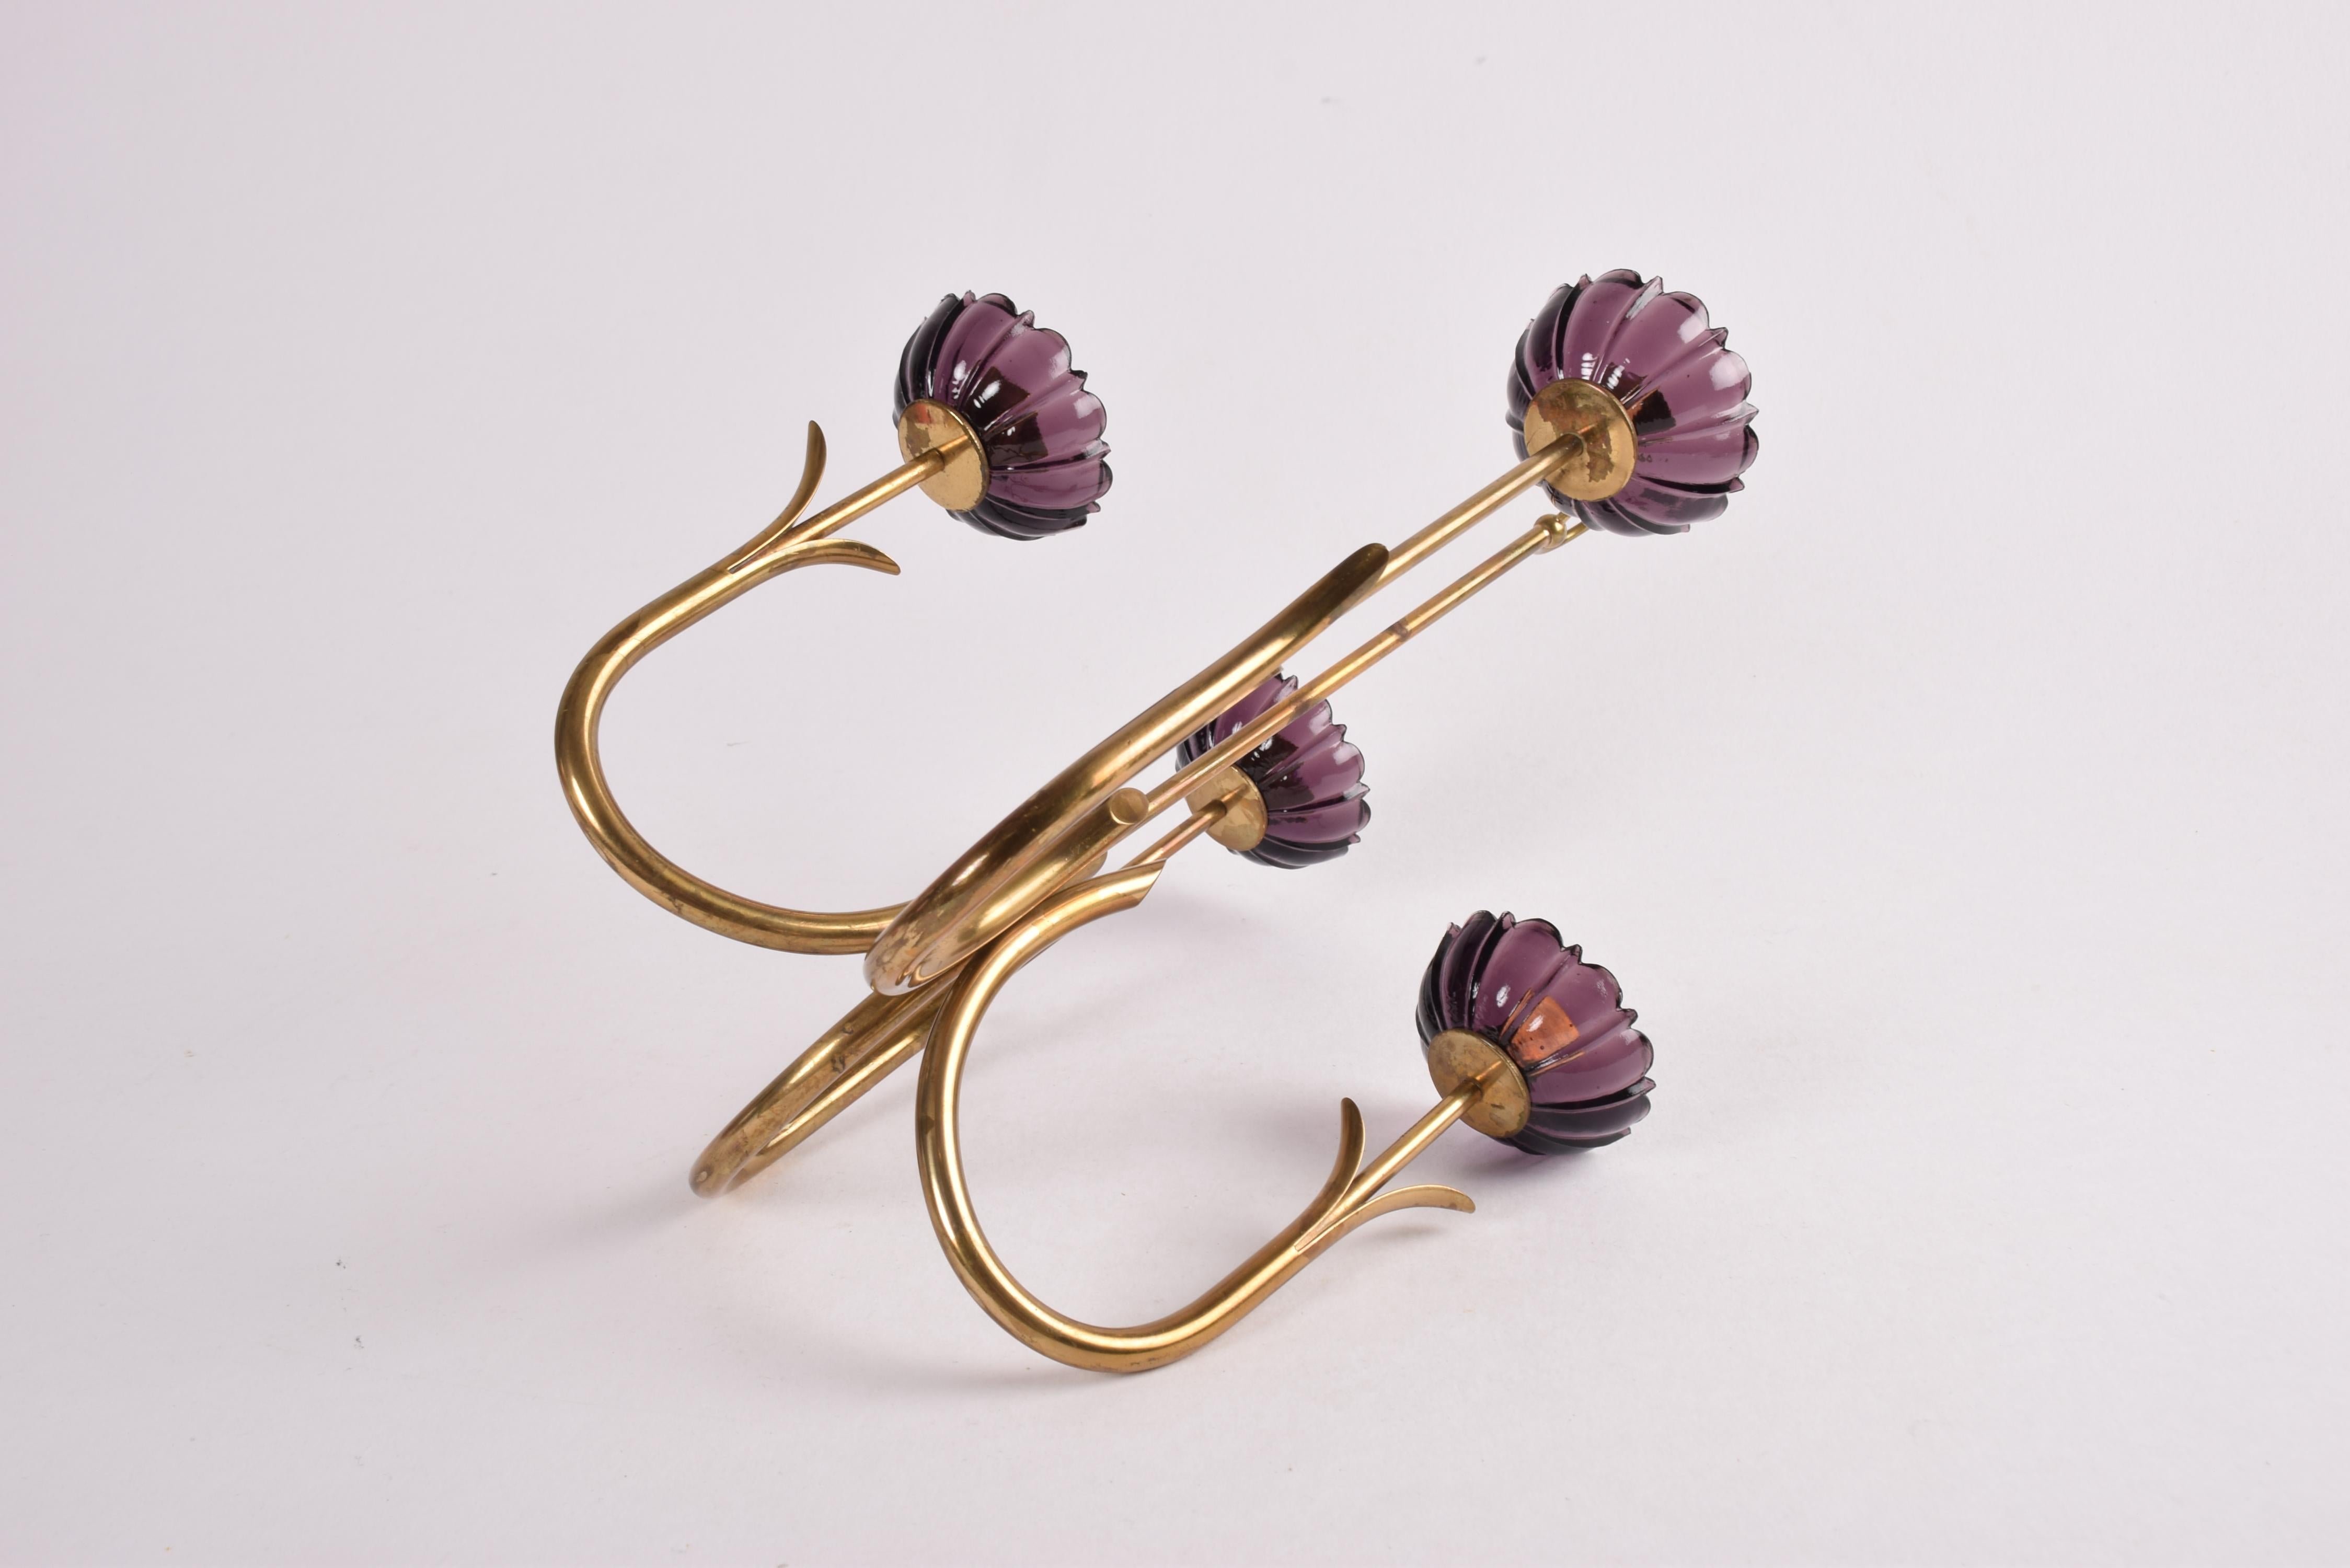 Gunnar Ander 4 Flower Candelabra Brass & Purple Glass, Ystad Metall Sweden 1960s For Sale 7